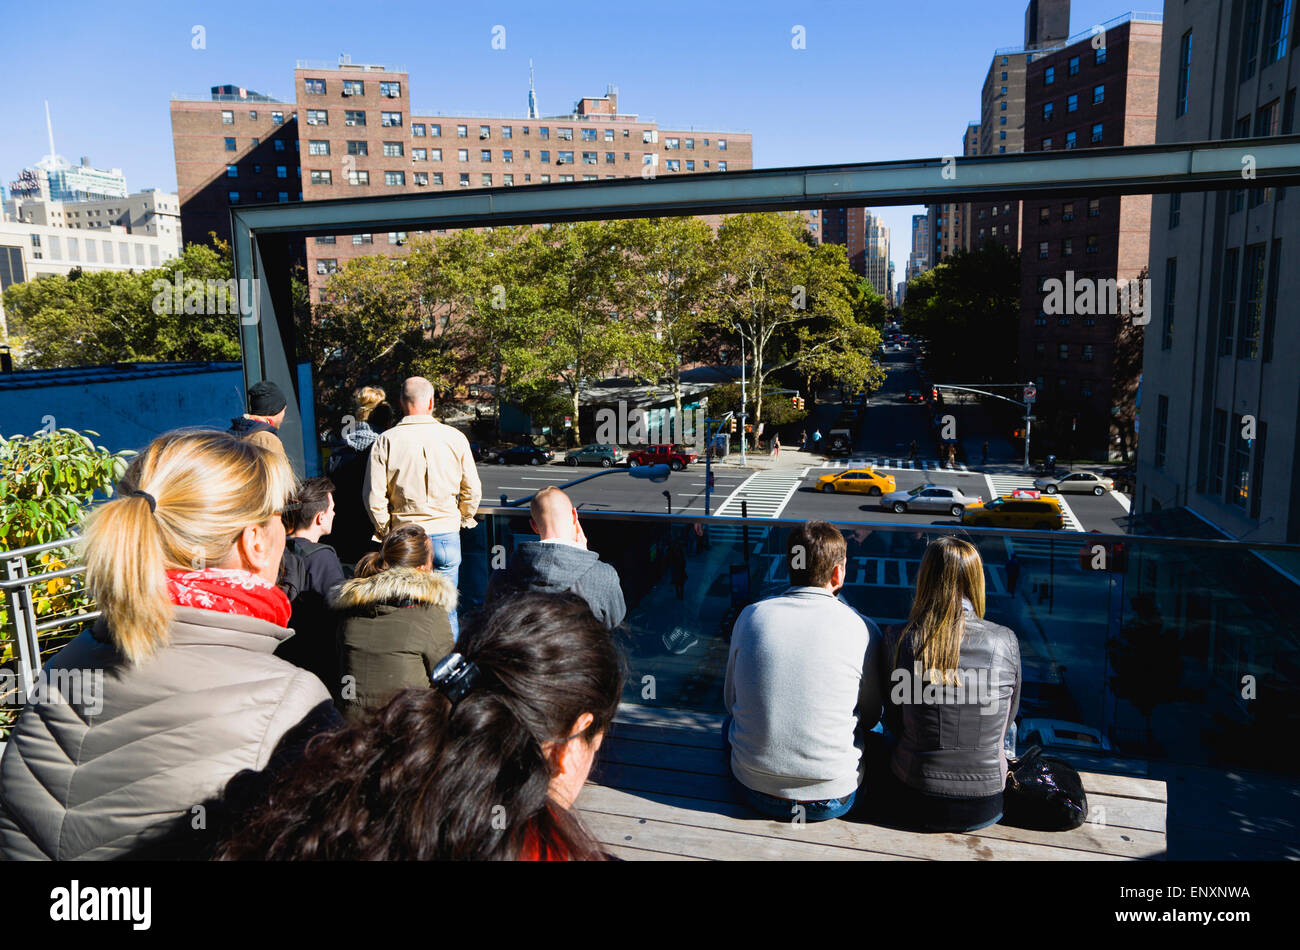 Stati Uniti d'America, New York Manhattan, persone sedute al 26th Street sperone di visualizzazione sulla linea alta parco lineare su un disuso ferrovia sopraelevata a guardare il traffico sulla strada sottostante. Foto Stock